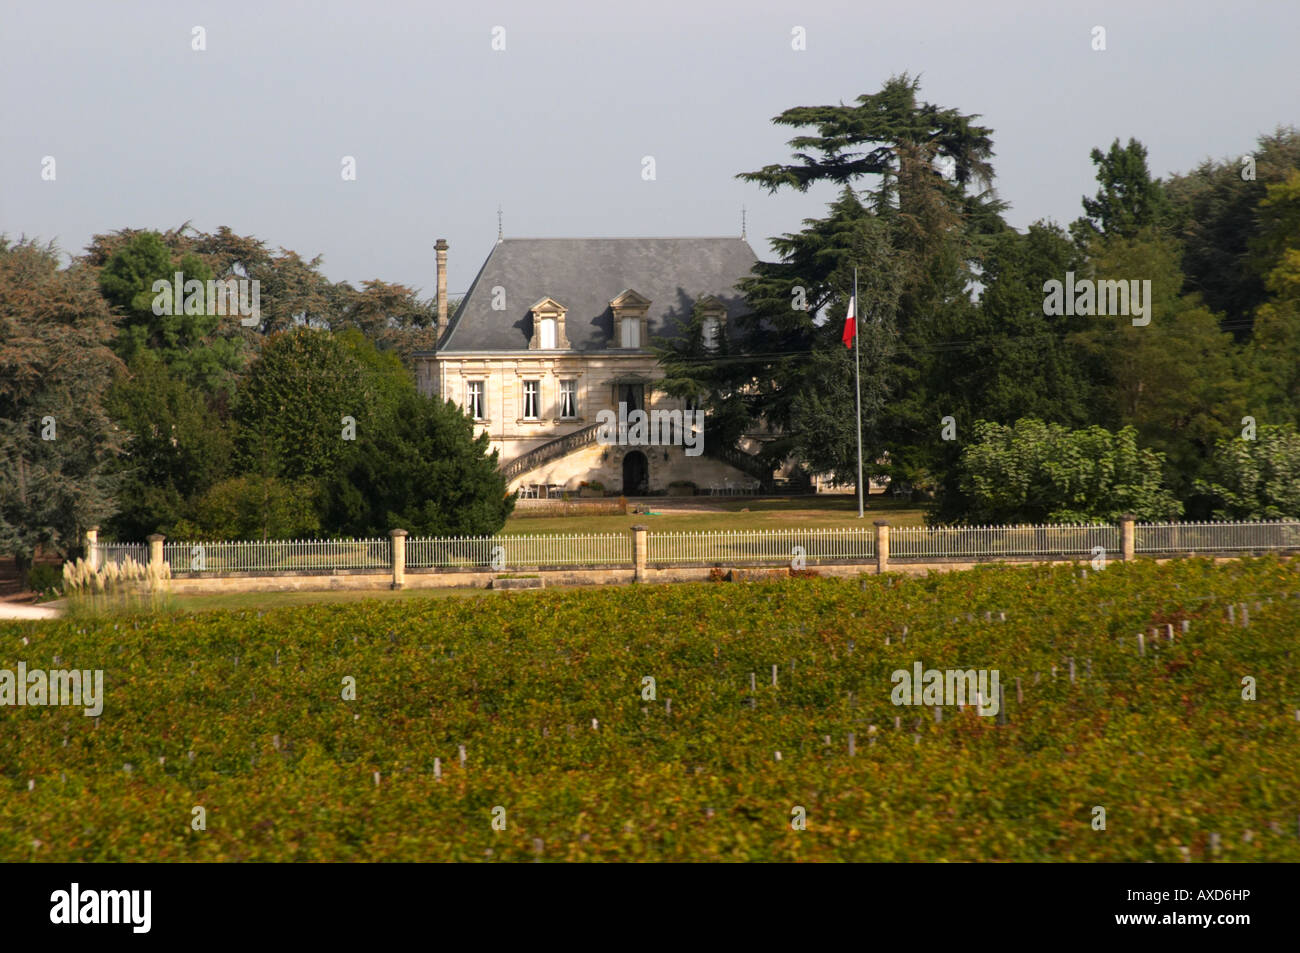 Chateau Maison Blance, Montagne St Emilion. Saint Emilion, Bordeaux, France Stock Photo